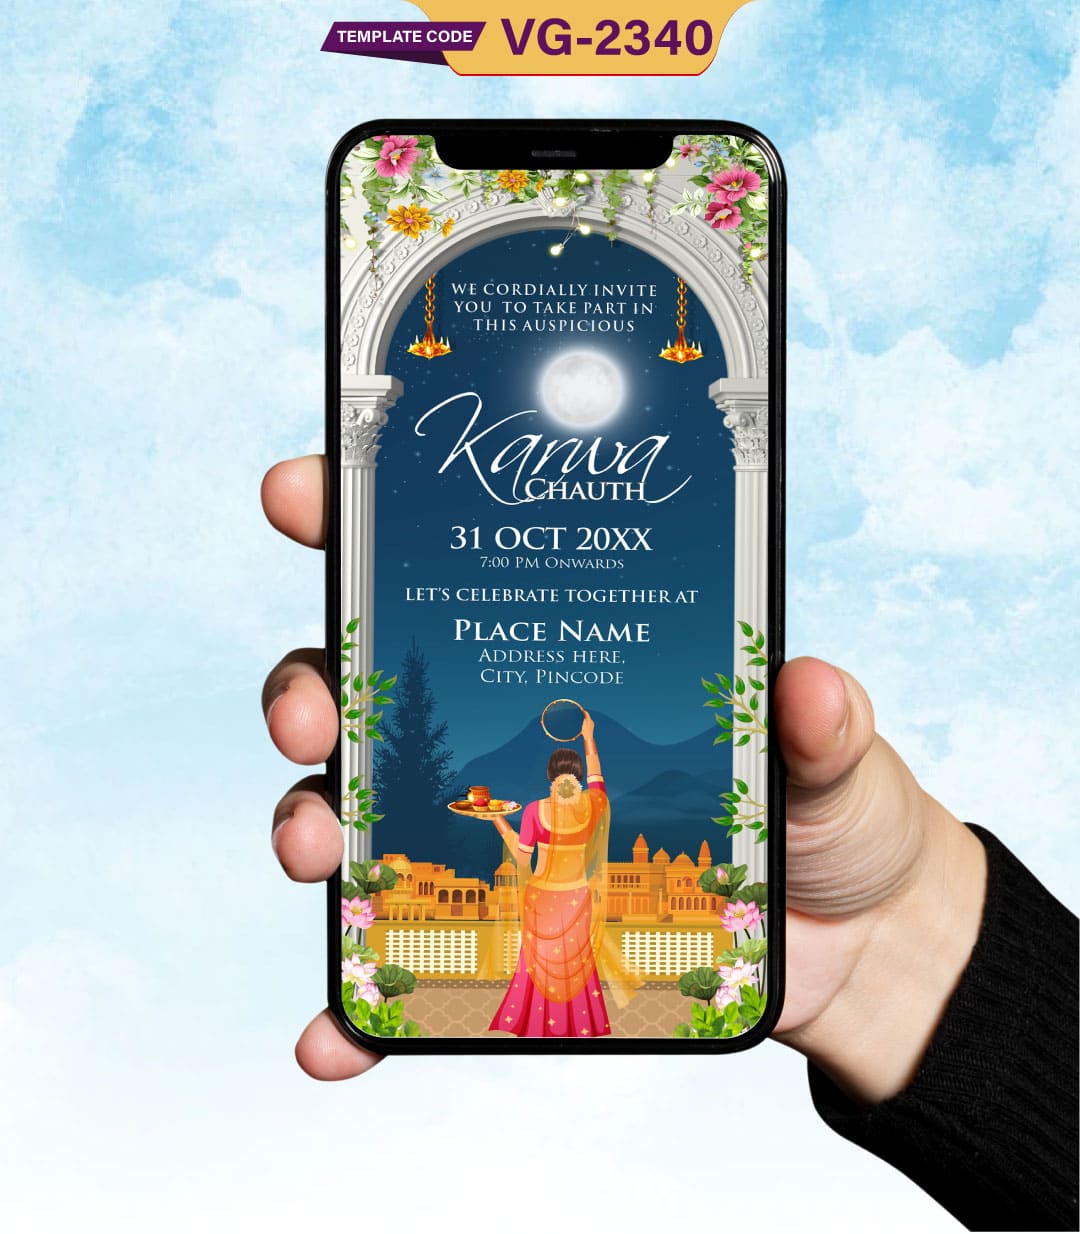 Karwa Chauth Festival Card